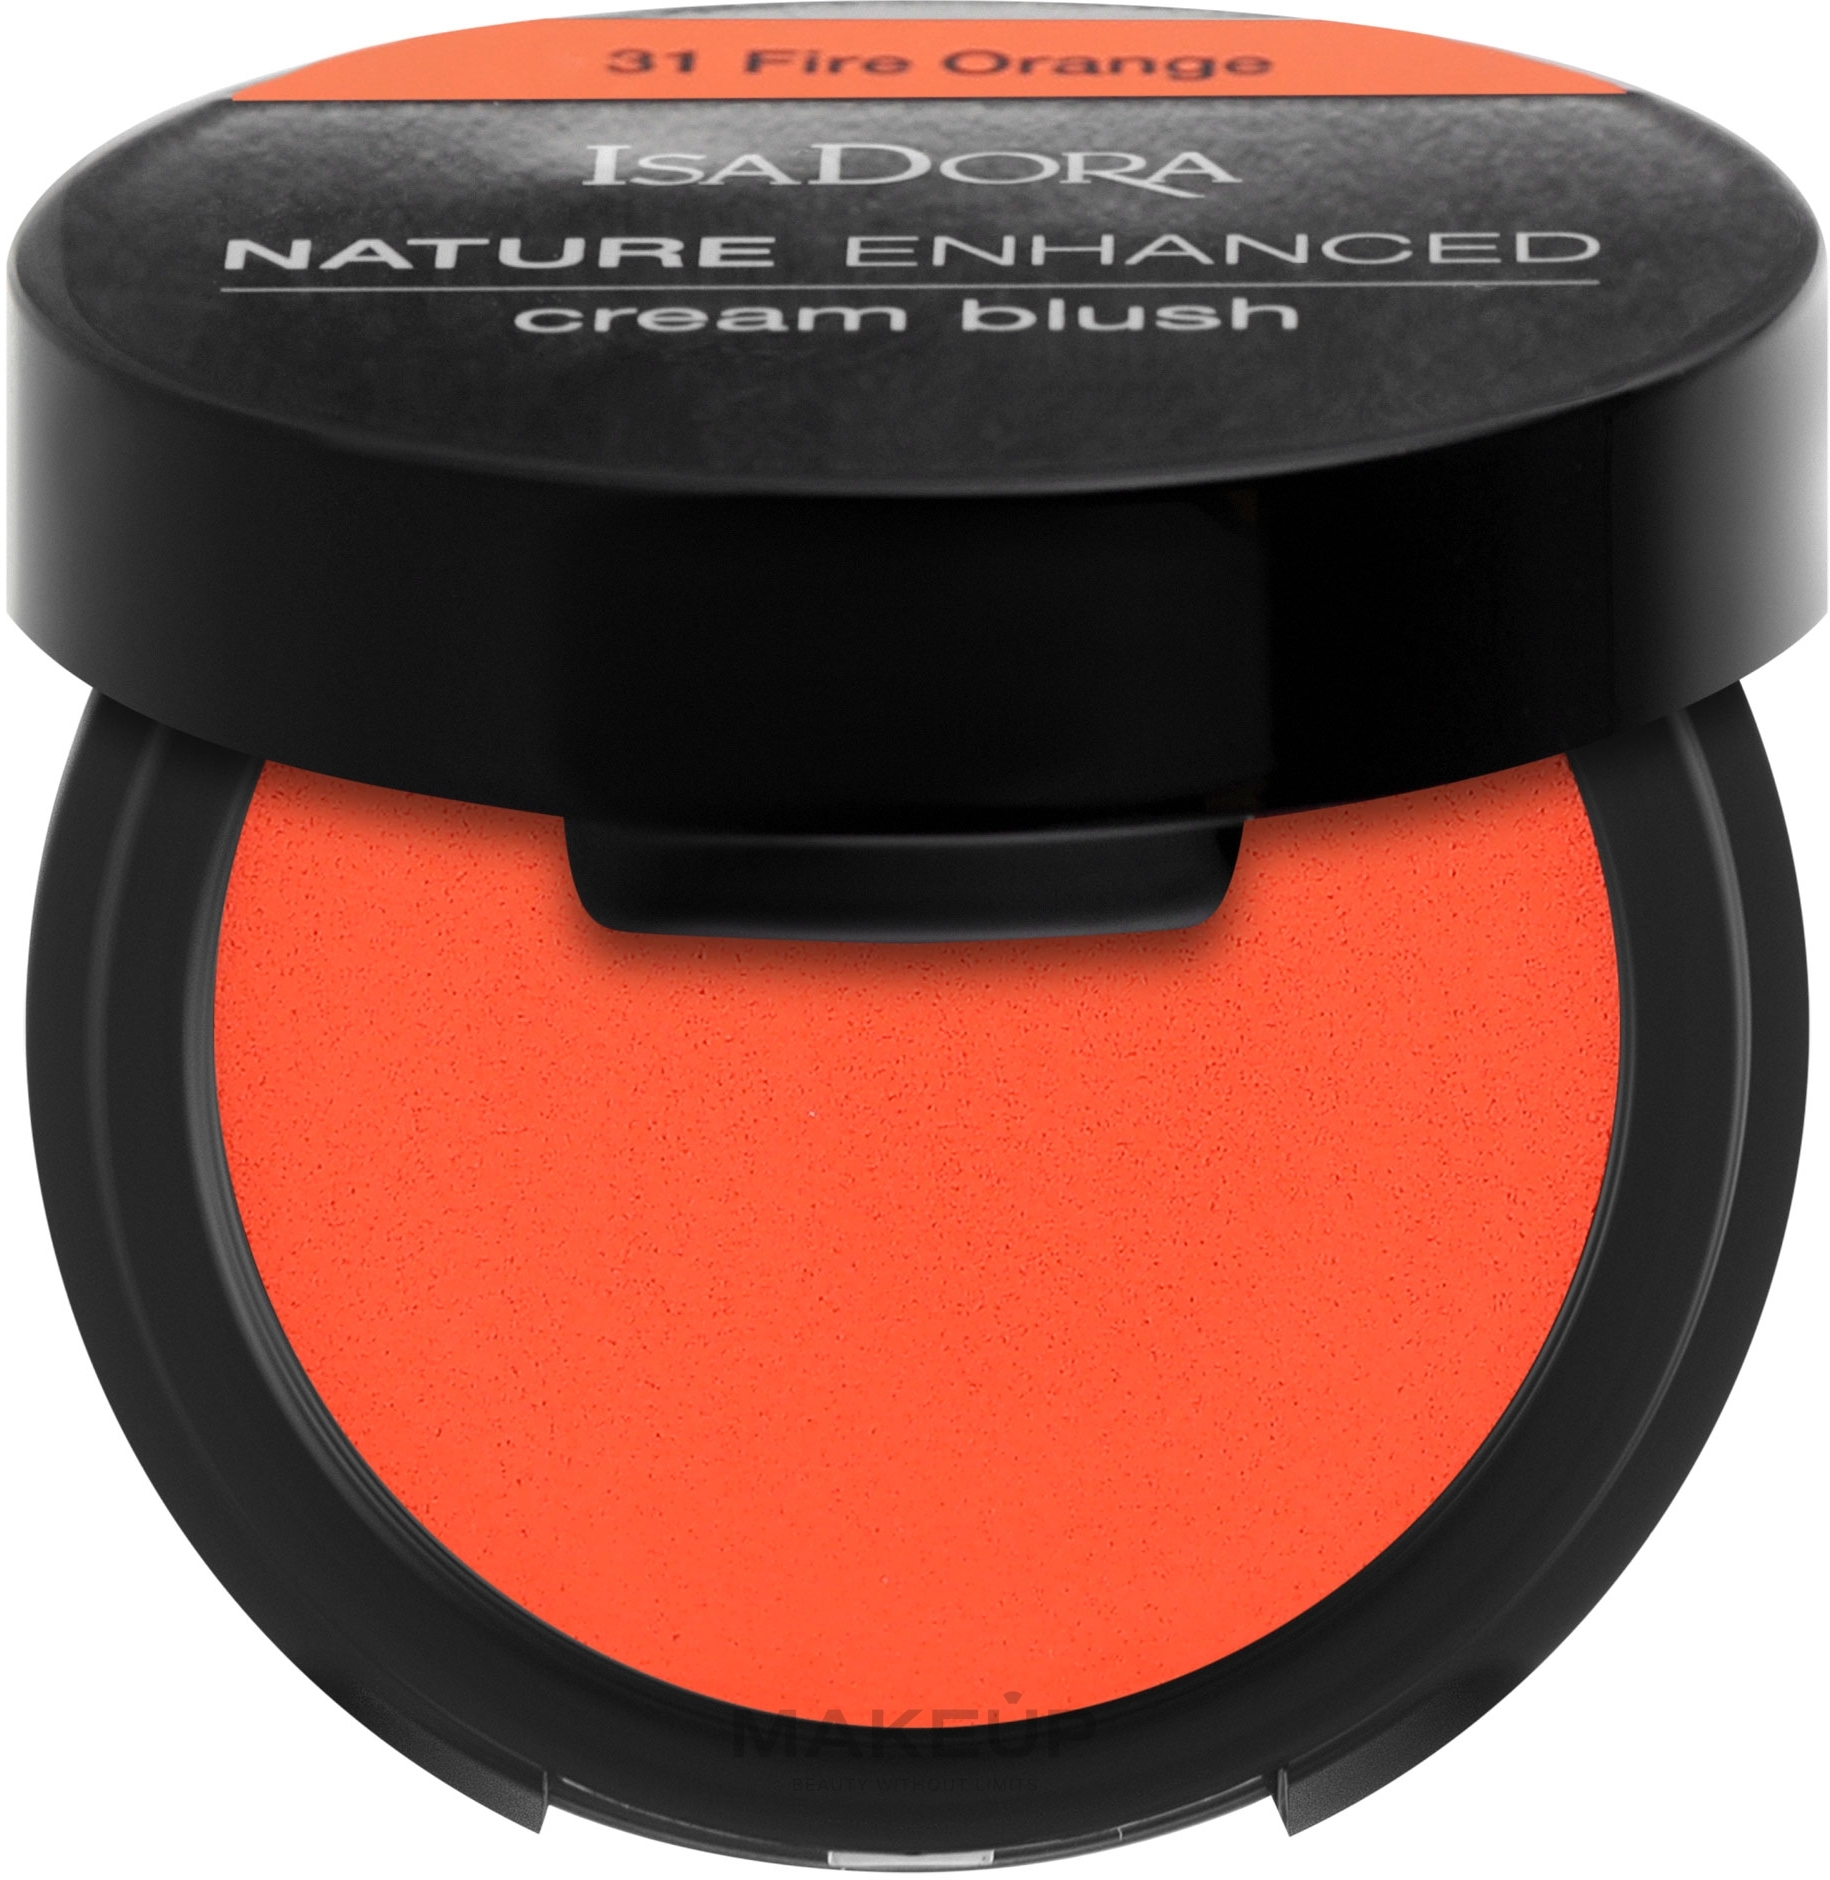 Róż do policzków w kremie - IsaDora Nature Enhanced Cream Blush — Zdjęcie 31 - Fire Orange